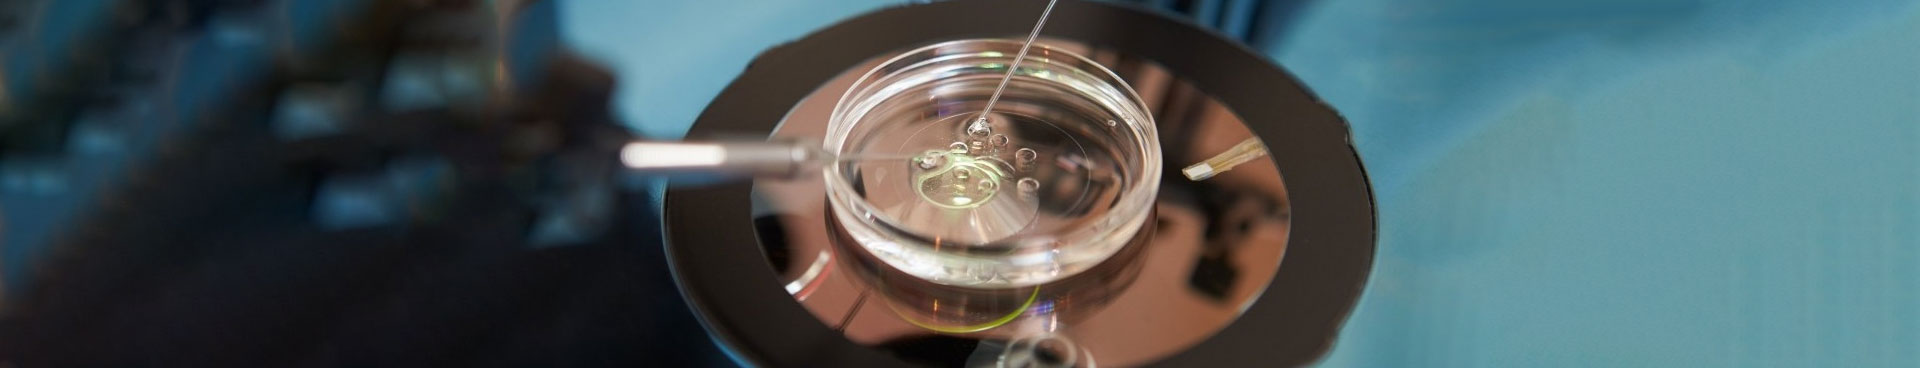 Embryo Donation Process In Ontario, Canada